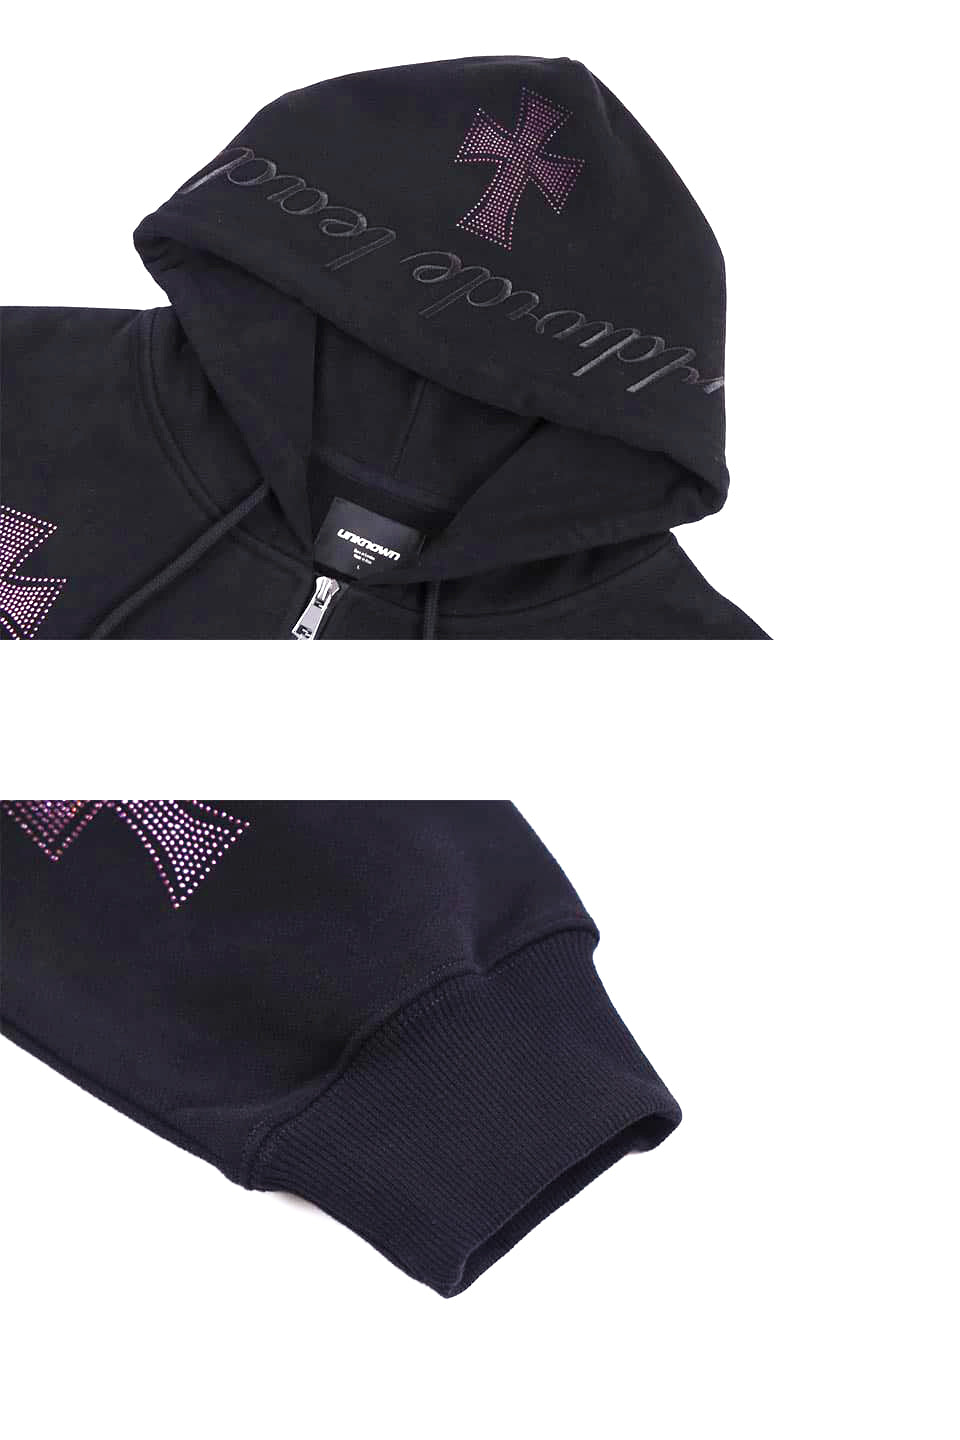 Black × purple Rhinestone Cross Zip Hoodie